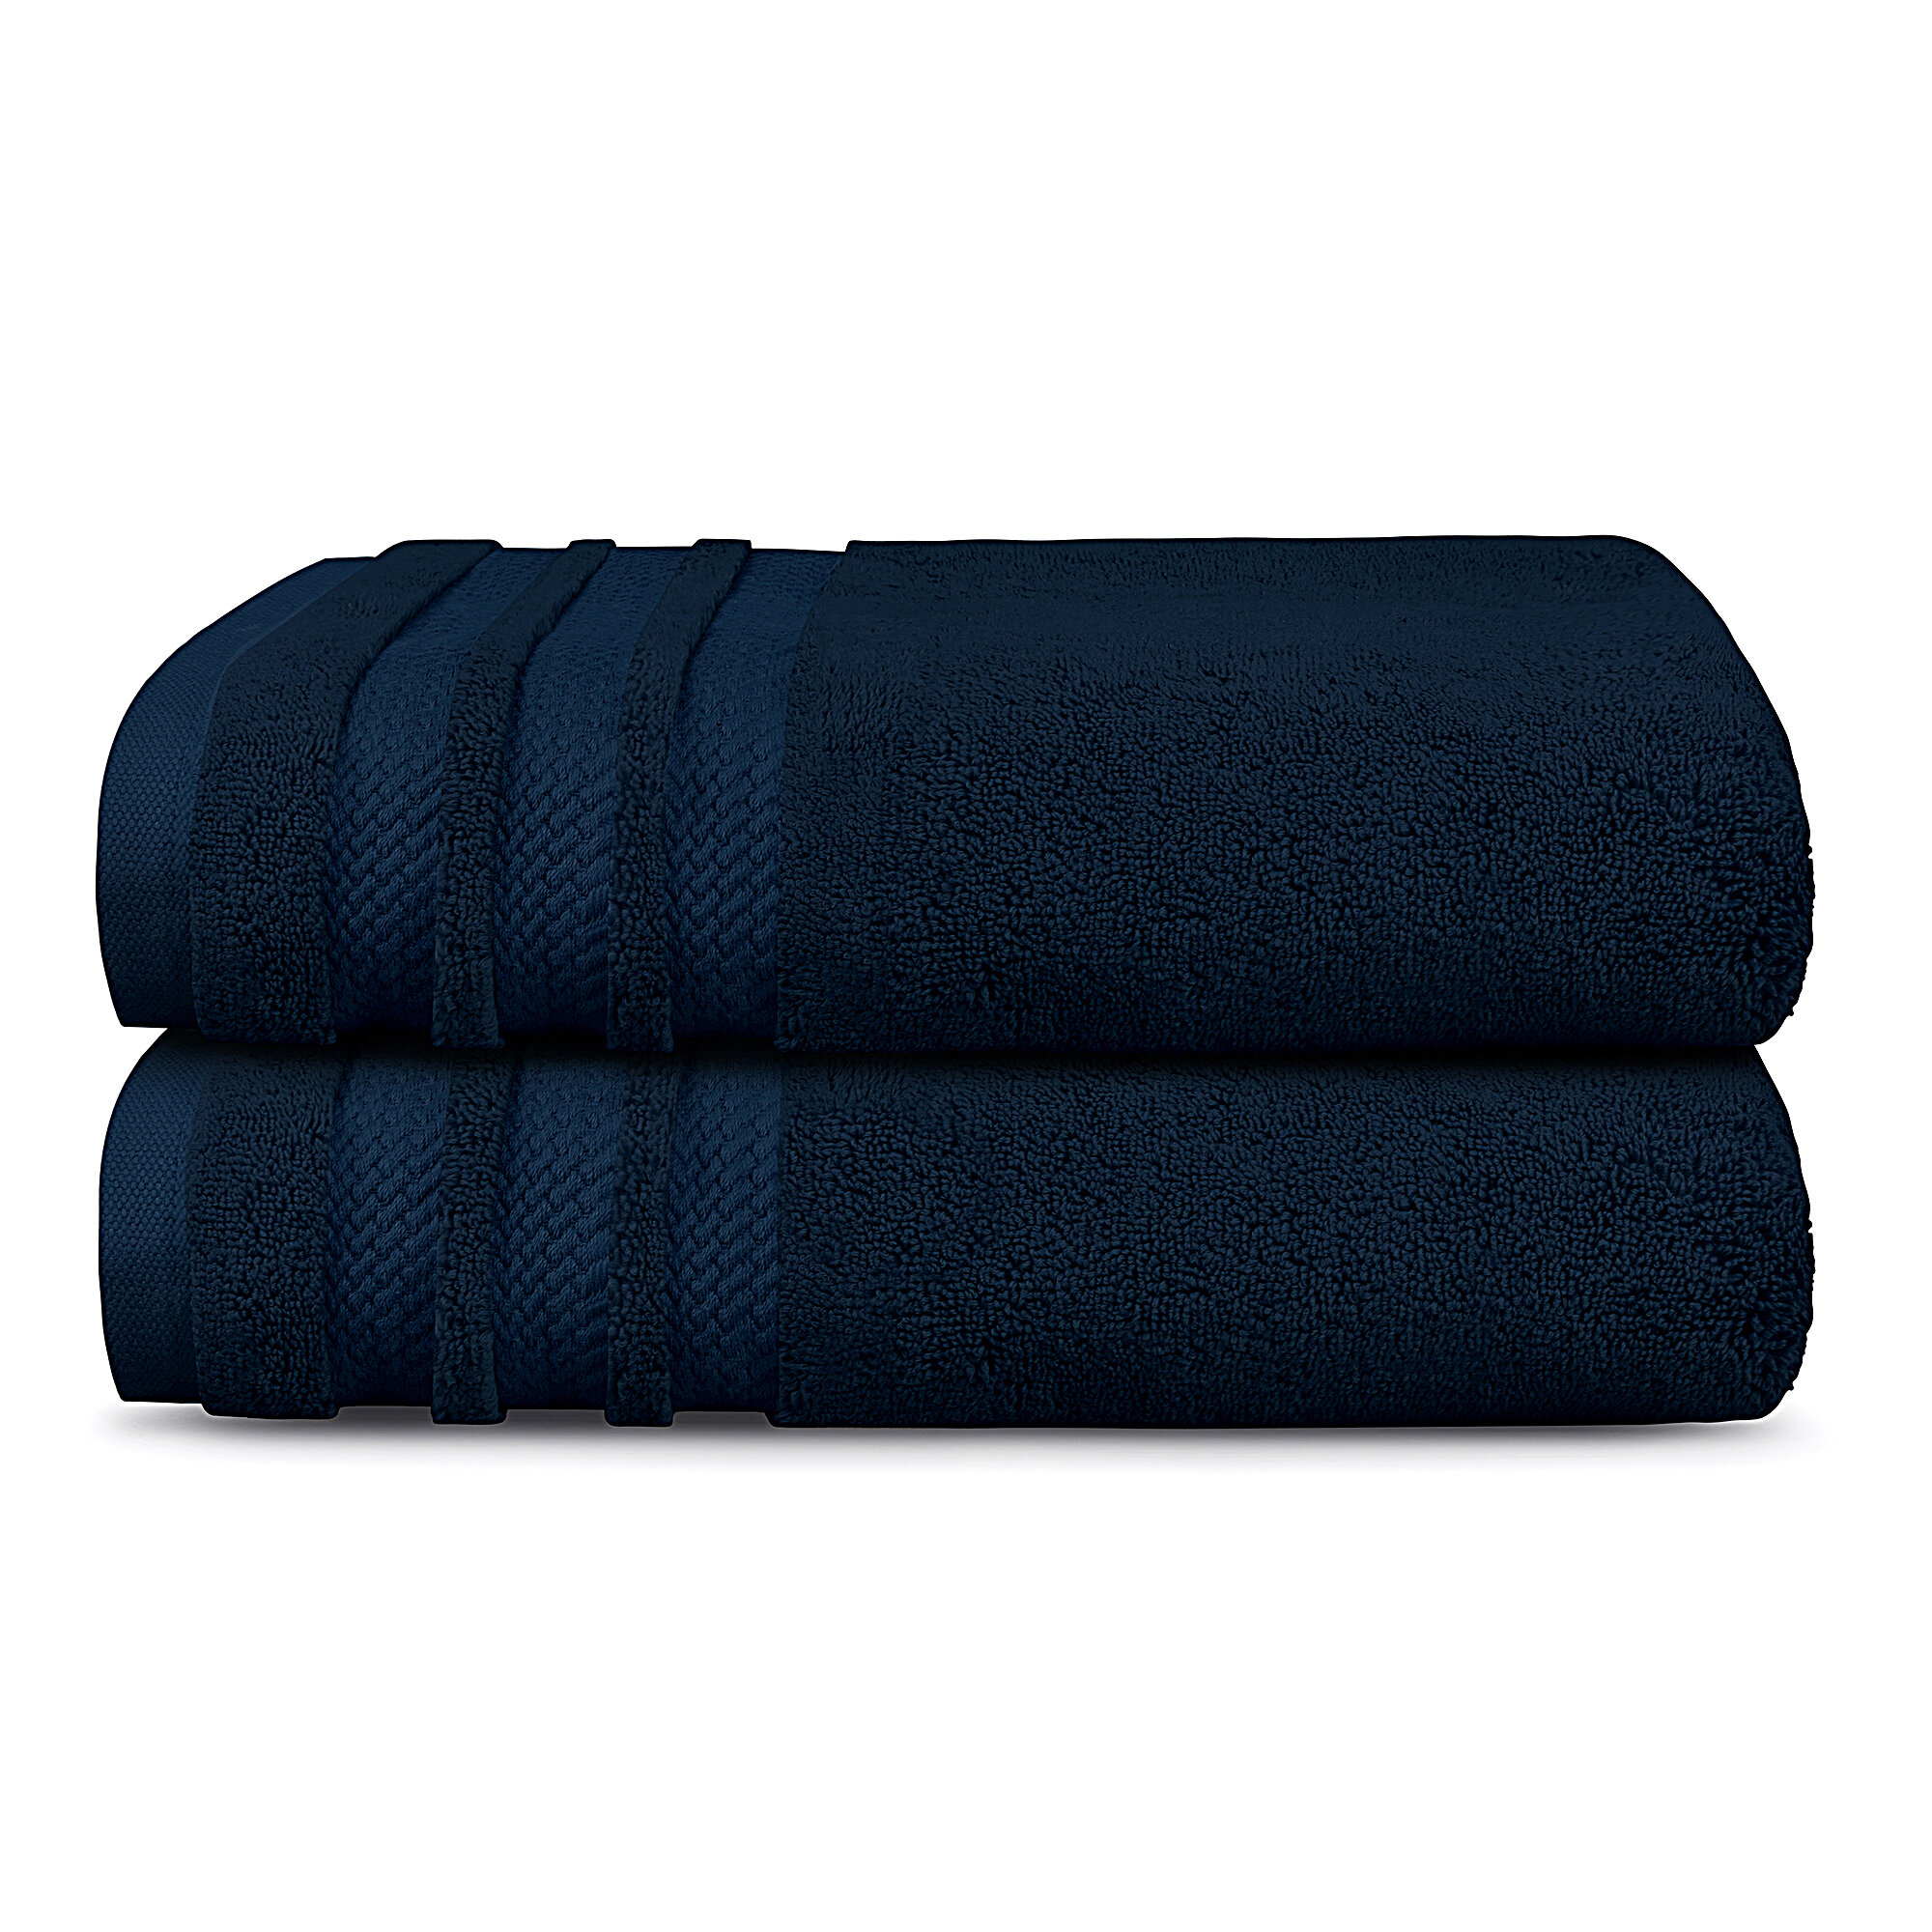 https://assets.wfcdn.com/im/20419843/compr-r85/1235/123541739/felding-100-cotton-bath-towels-set-of-2.jpg